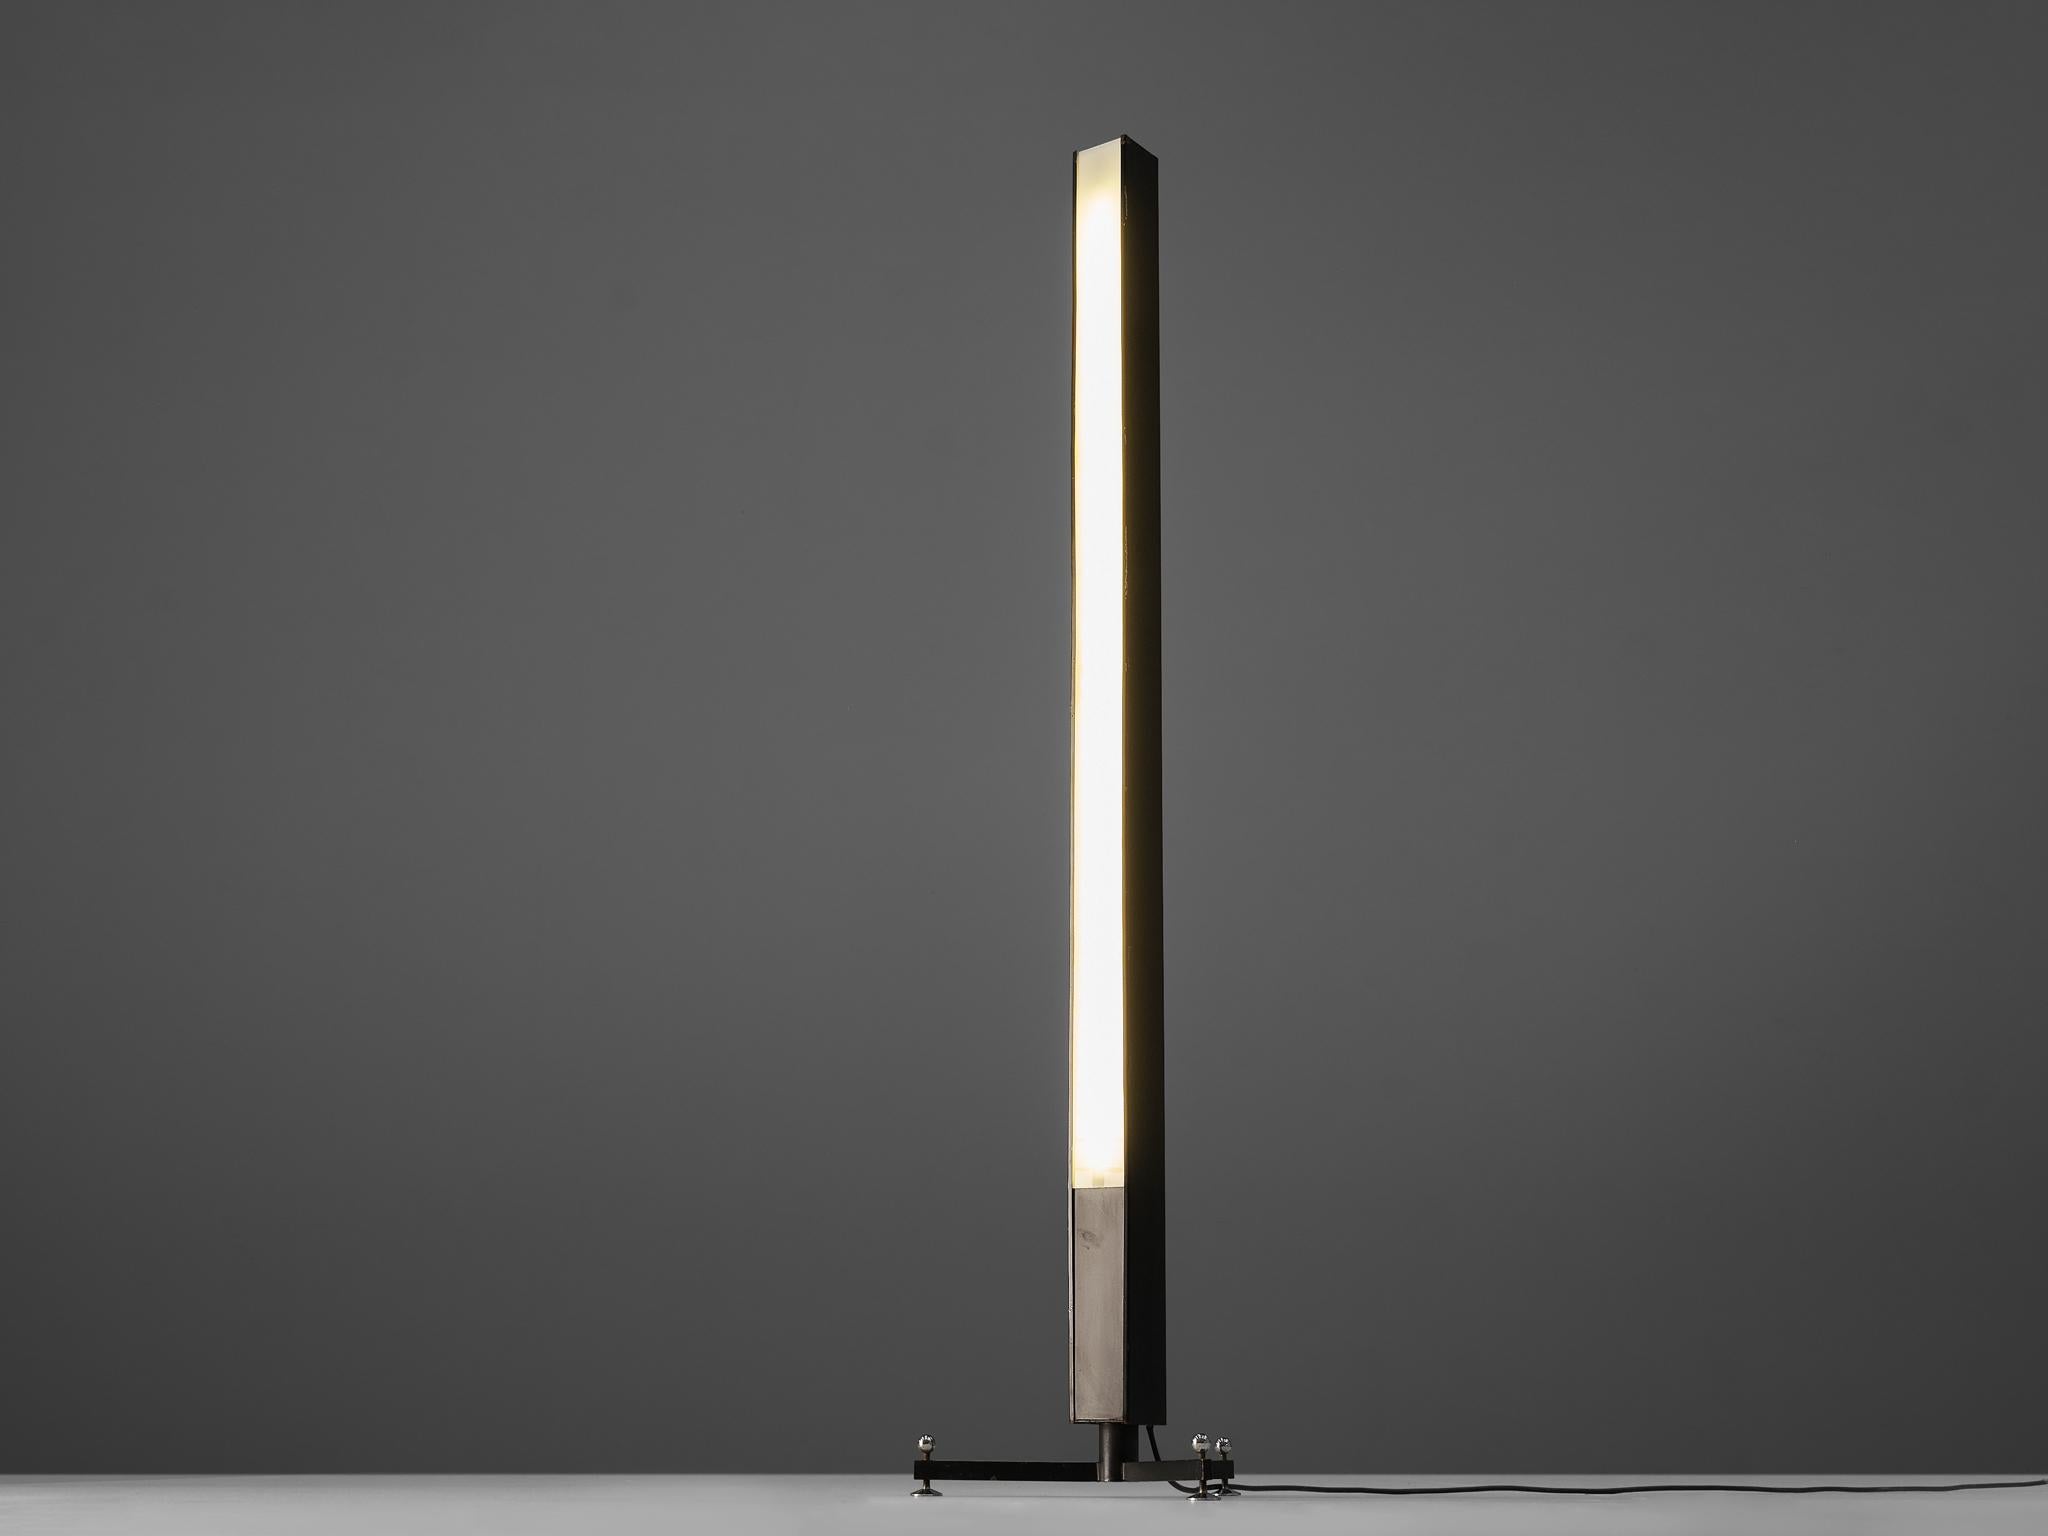 Wim Ypma/Iepma für A. Polak, Stehleuchte, Metall, Acryl, Niederlande, 1950er Jahre

Ein niederländisches Design, das seiner Zeit voraus ist. Diese Lampe wurde in den fünfziger Jahren entworfen und hat einen postmodernen Look. Die Konstruktion